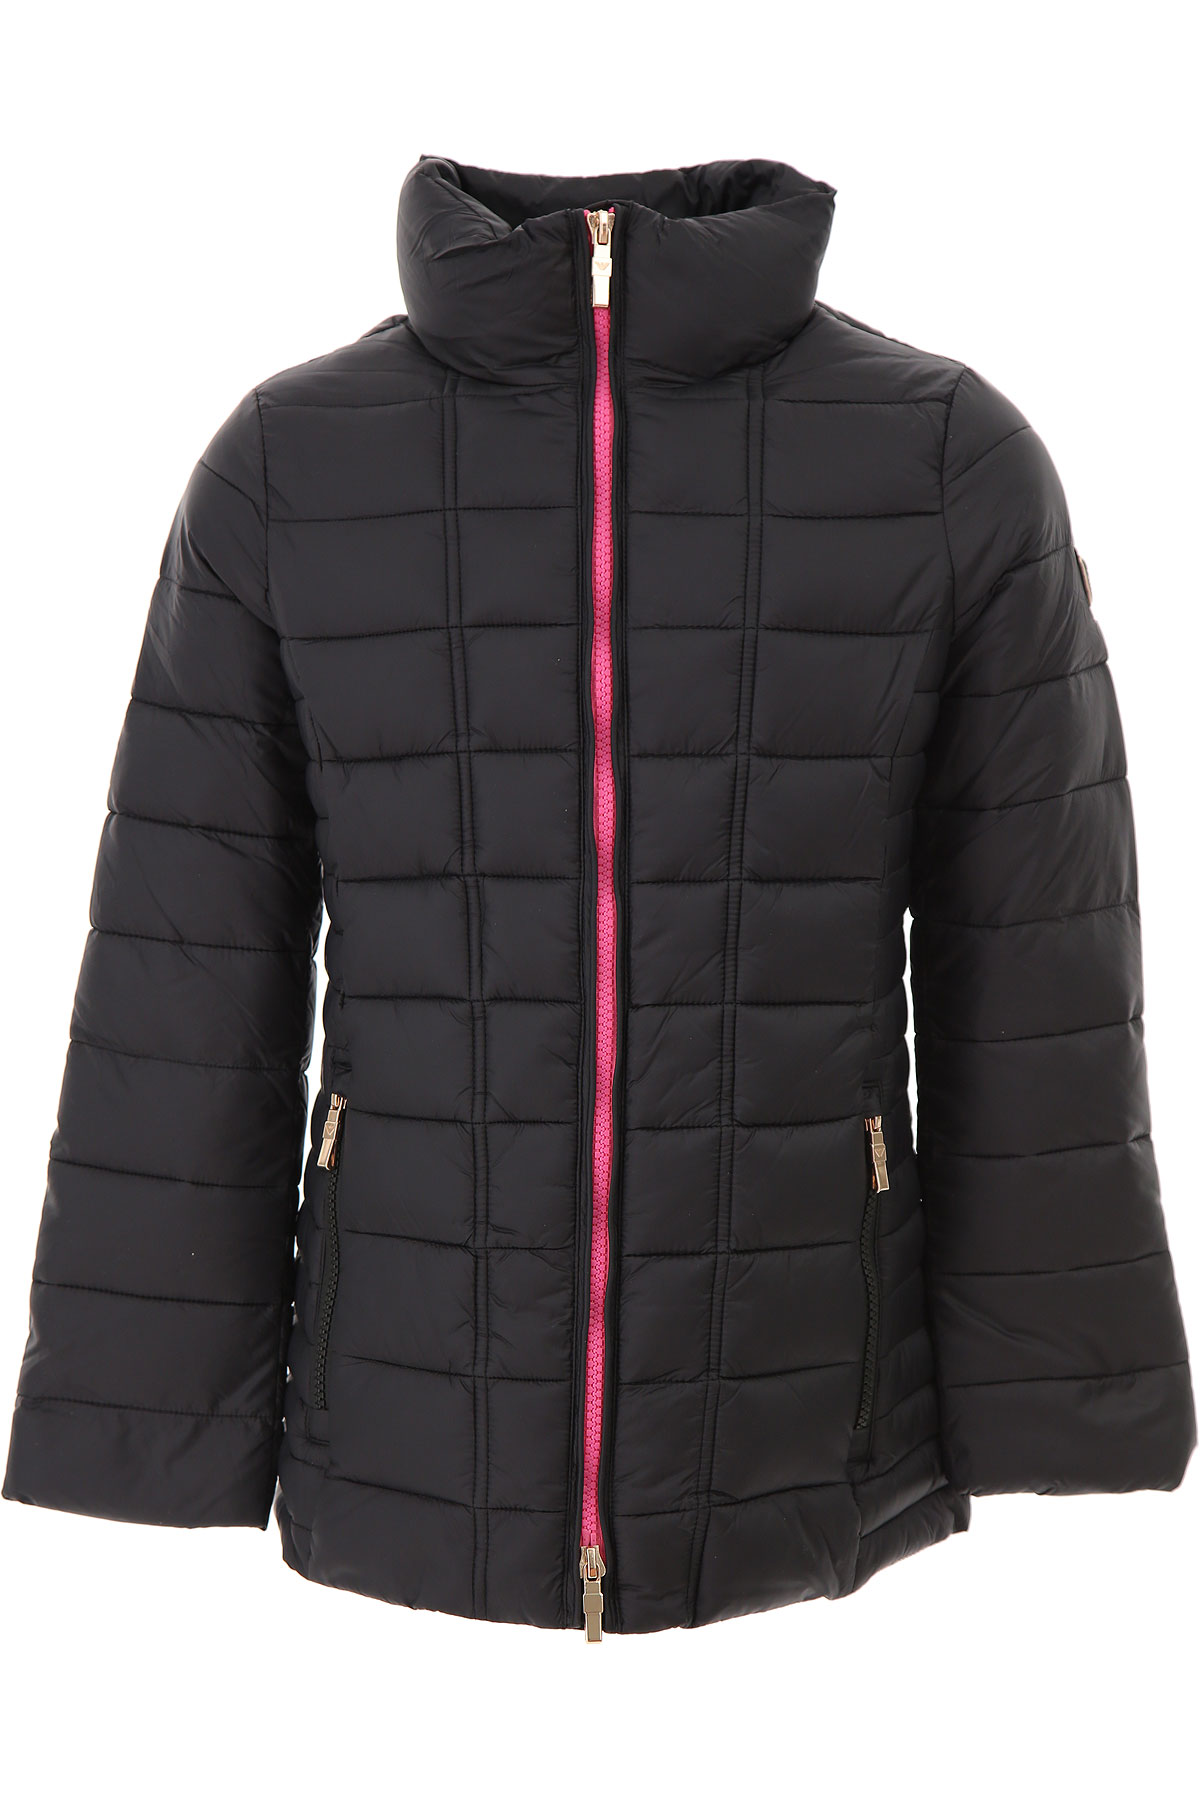 Emporio Armani Kinder Daunen Jacke für Mädchen, Soft Shell Ski Jacken Günstig im Outlet Sale, Schwarz, Polyester, 2017, 4Y 6Y